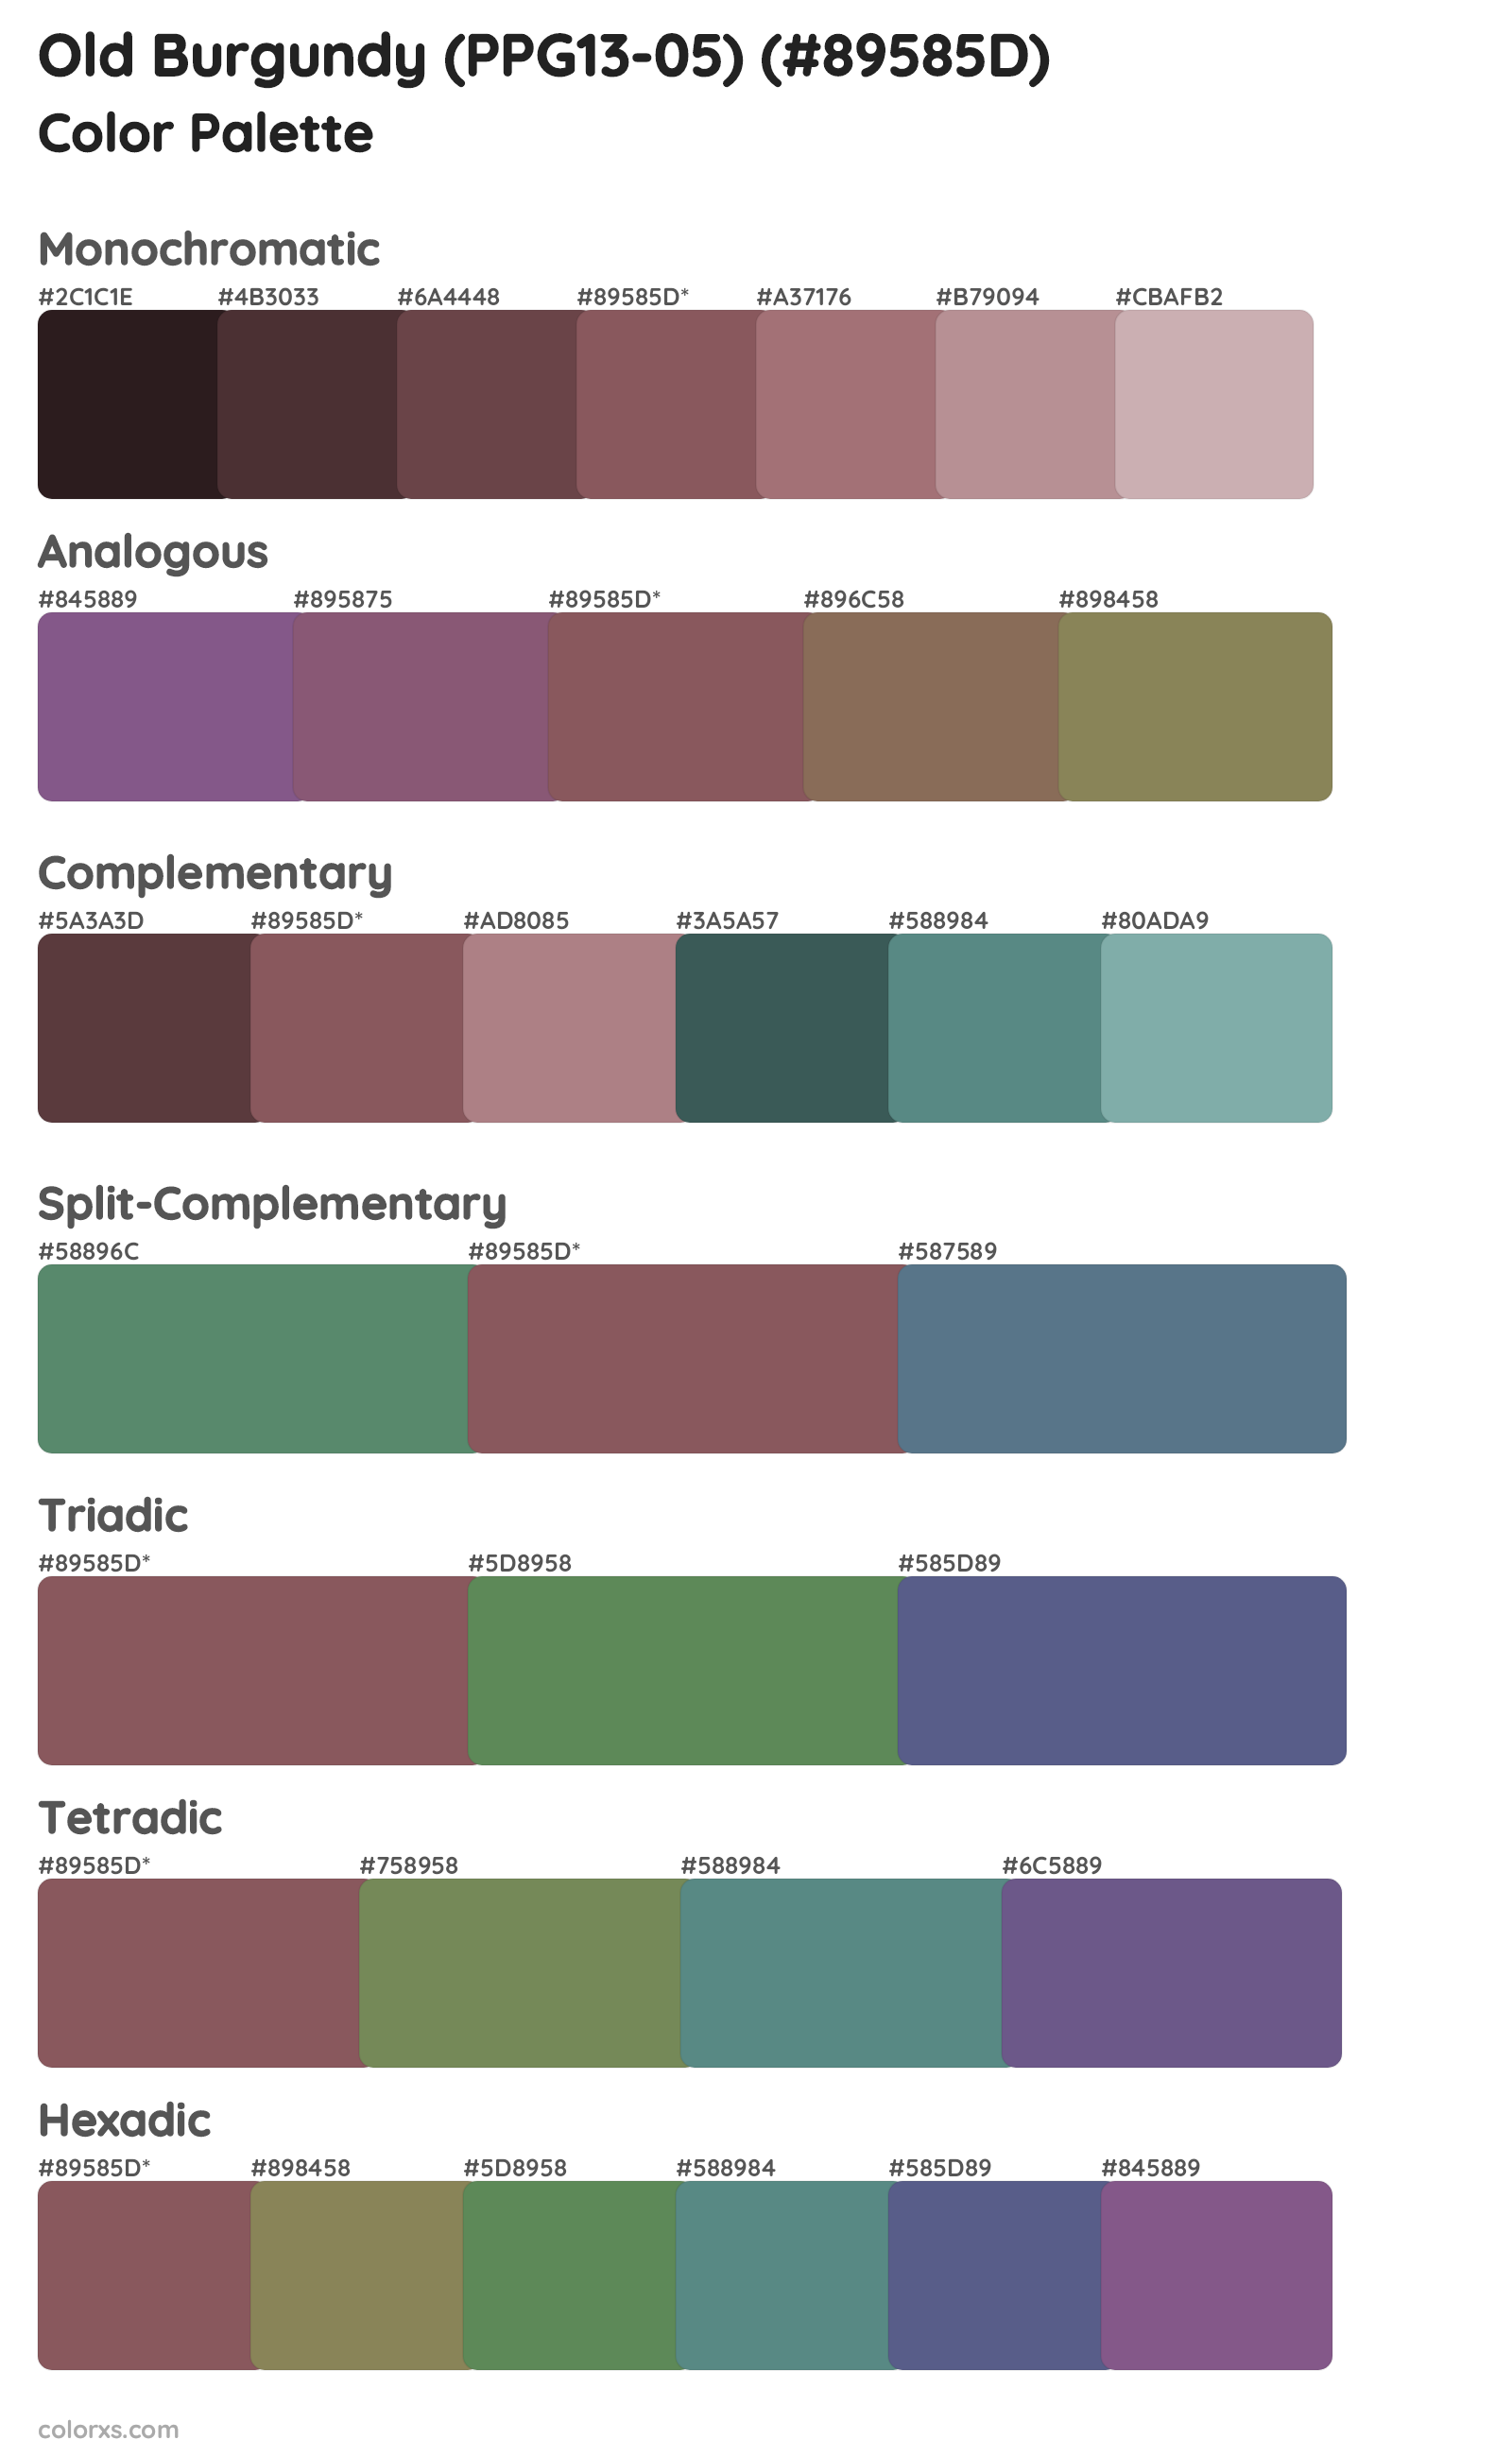 Old Burgundy (PPG13-05) Color Scheme Palettes